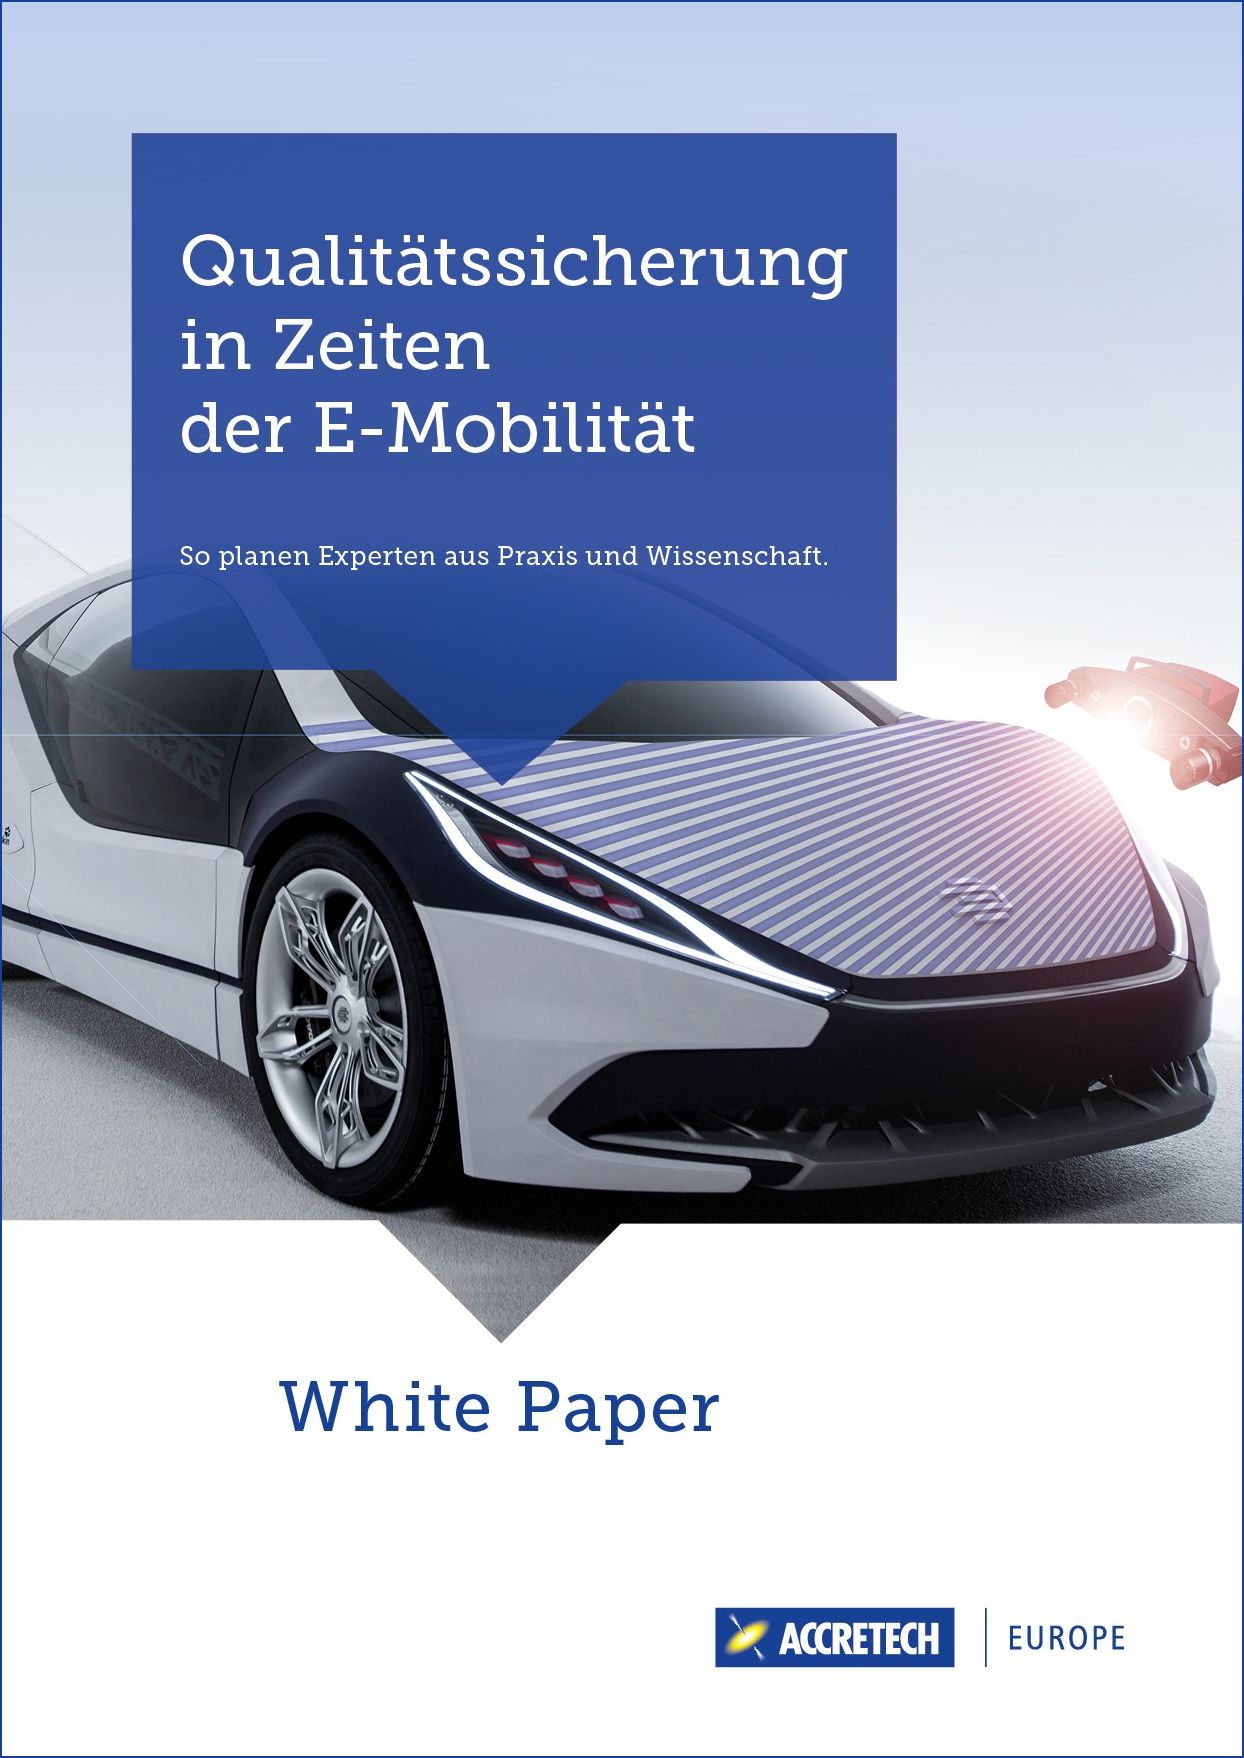 White Paper Qualitätssicherung in Zeiten der E-Mobility